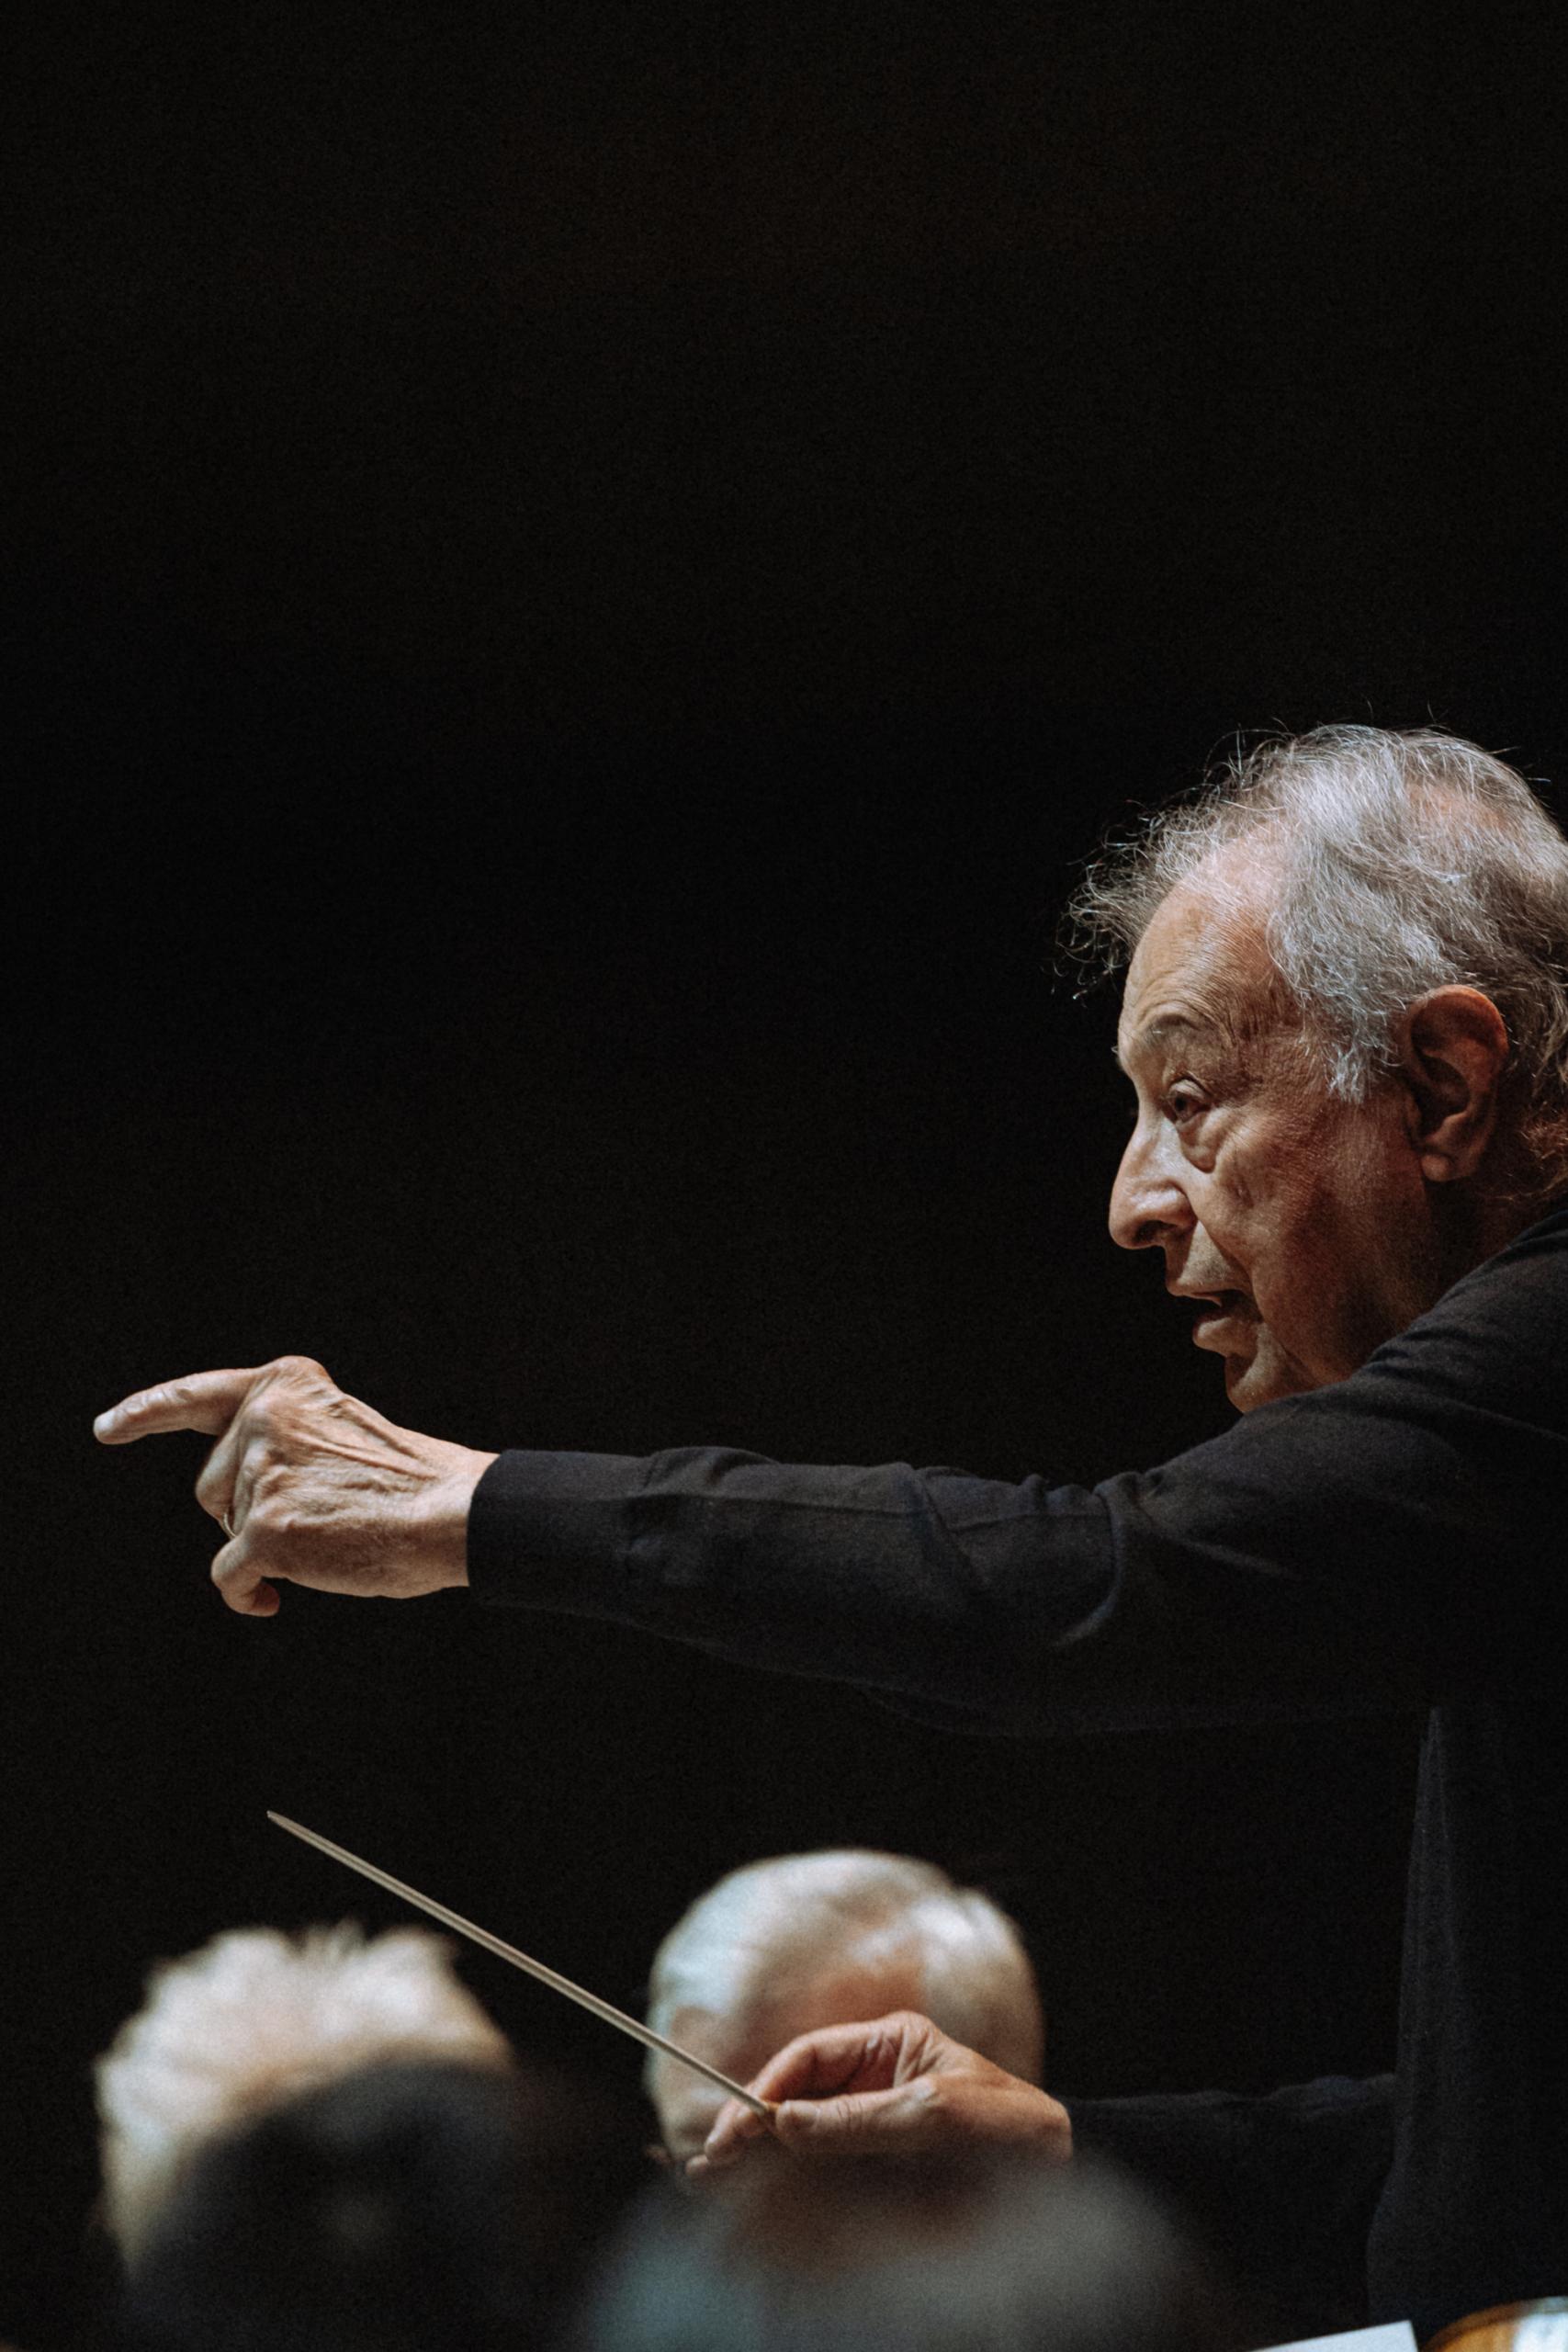 Porträt des Dirigenten Zubin Mehta